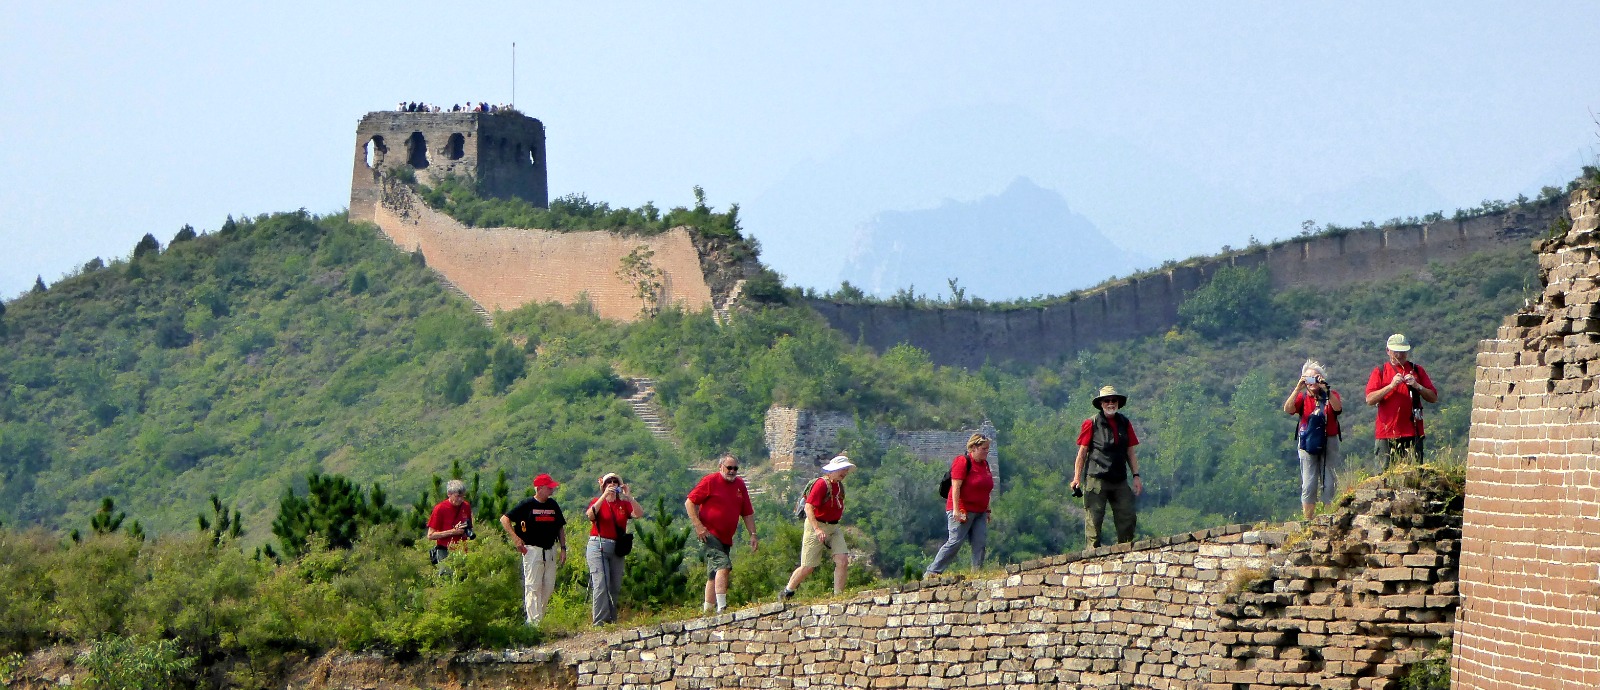 Beijing & Great Wall